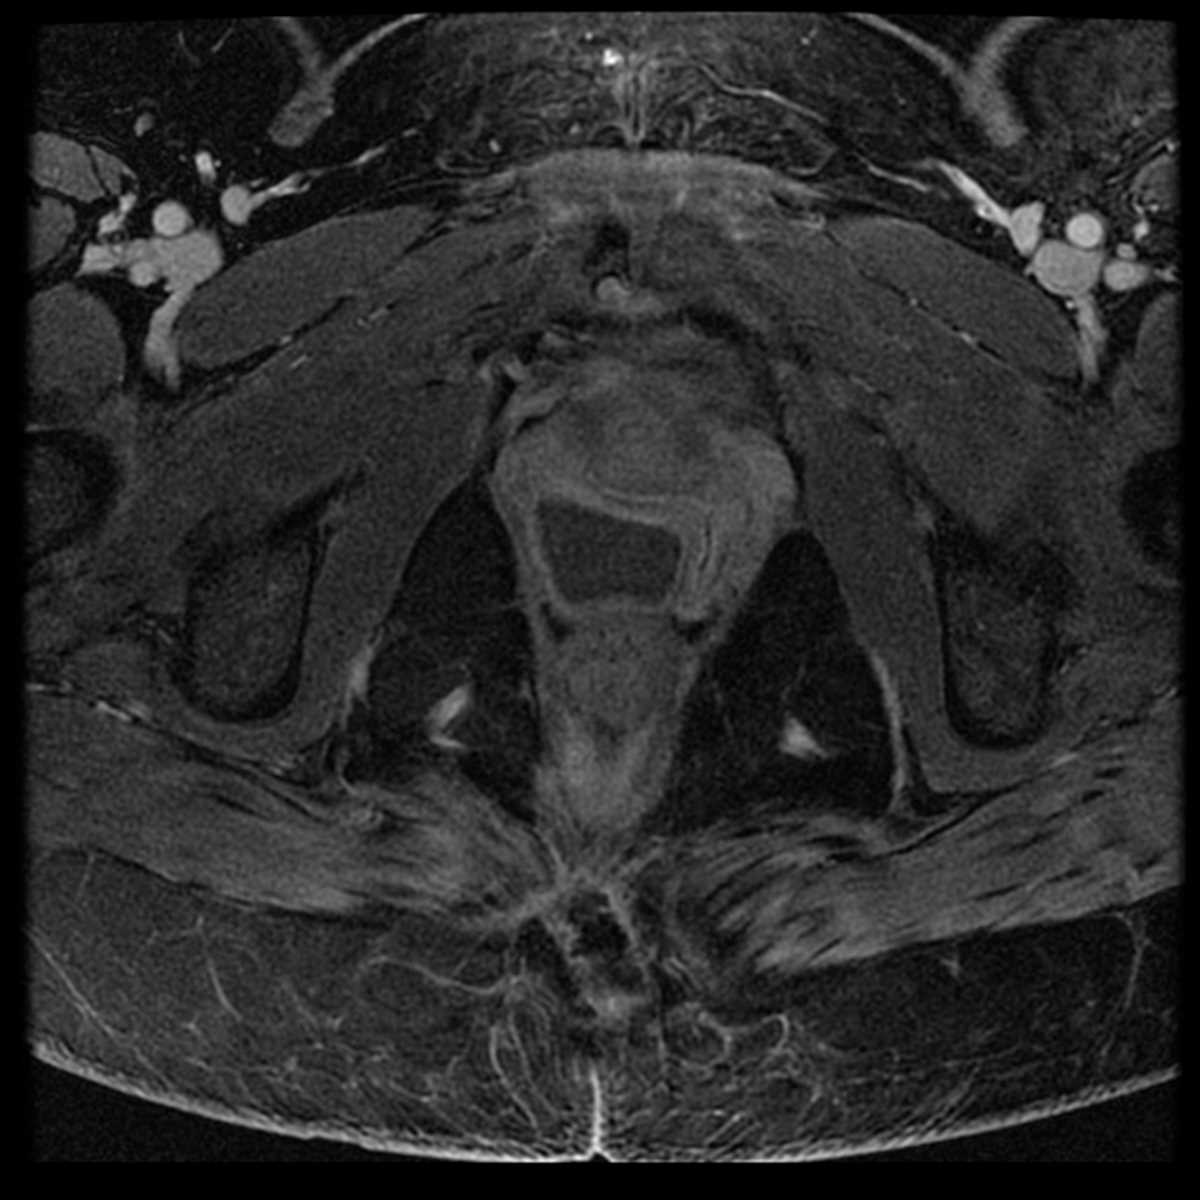 Gartner duct cyst - CTisus CT Scan